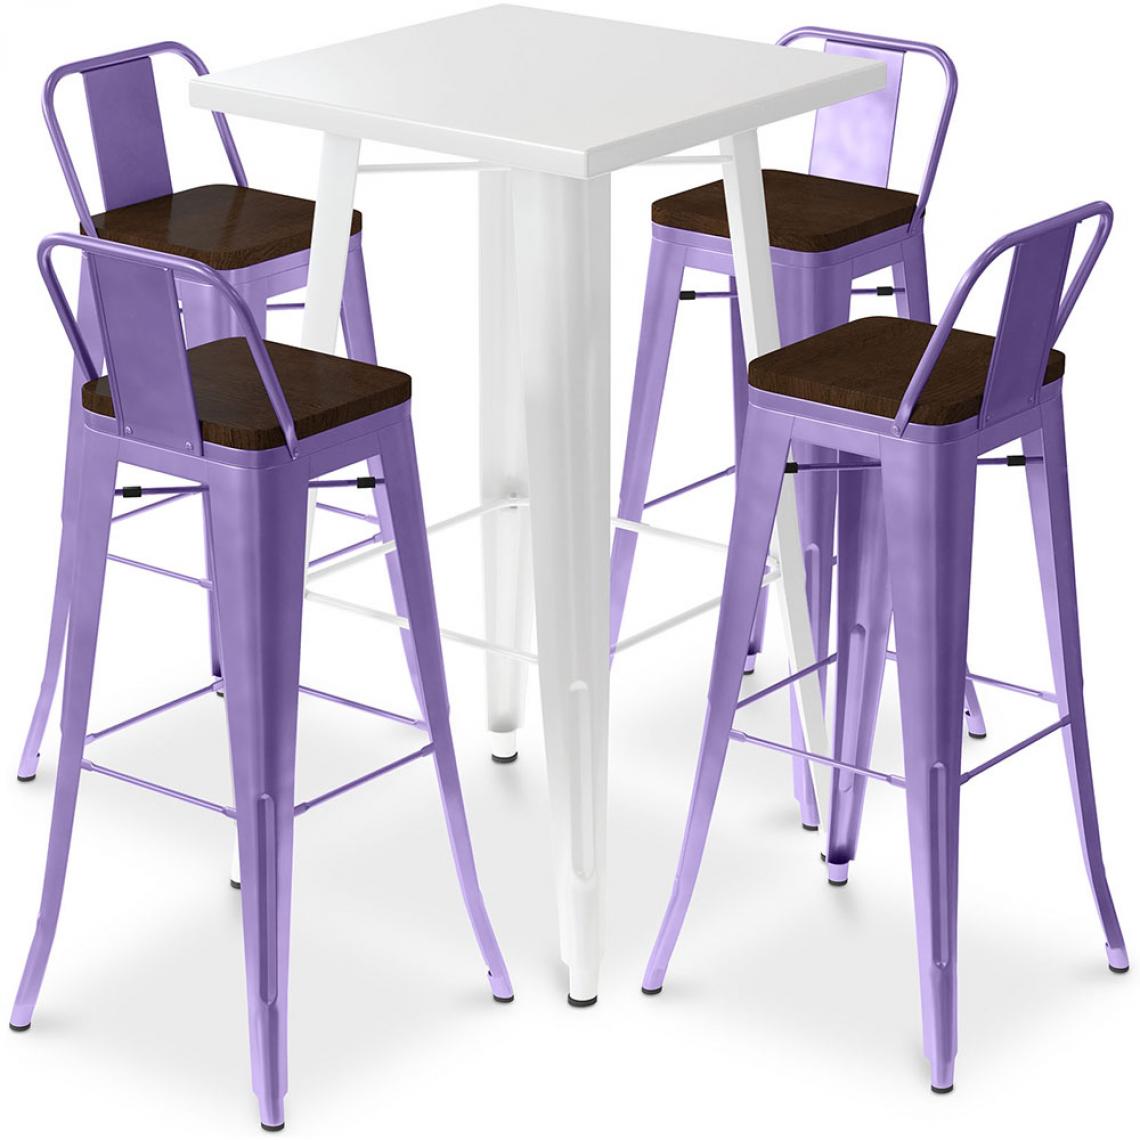 Iconik Interior - Table de bar blanche + 4 tabourets de bar en acier - Ensemble Bistrot Stylix Design industriel - Nouvelle édition Violet pastel - Tabourets